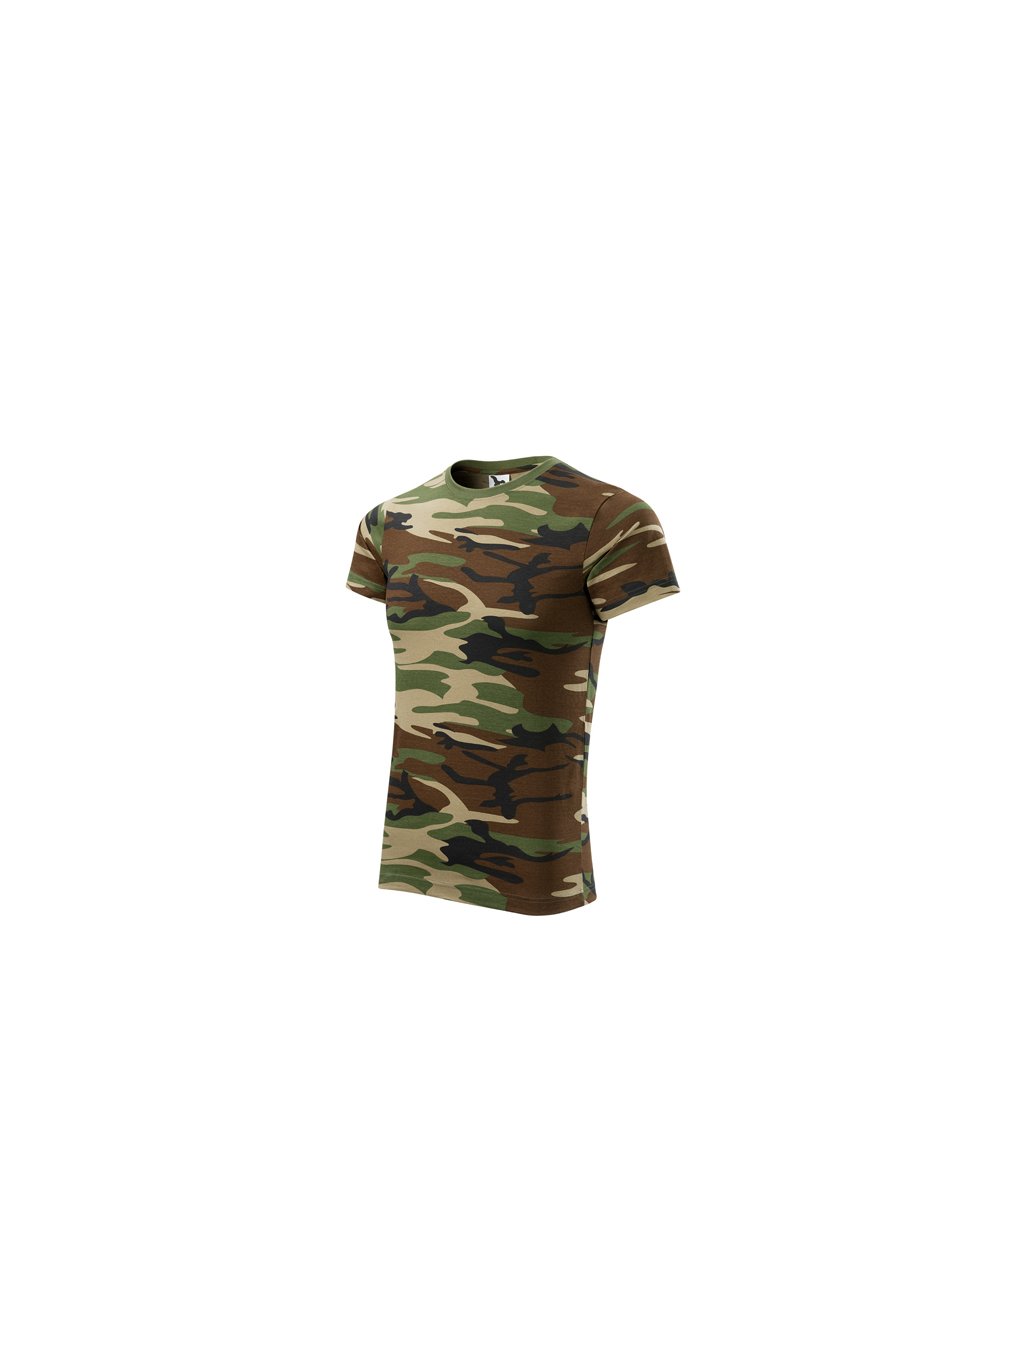 Pánské tričko Camouflage 144